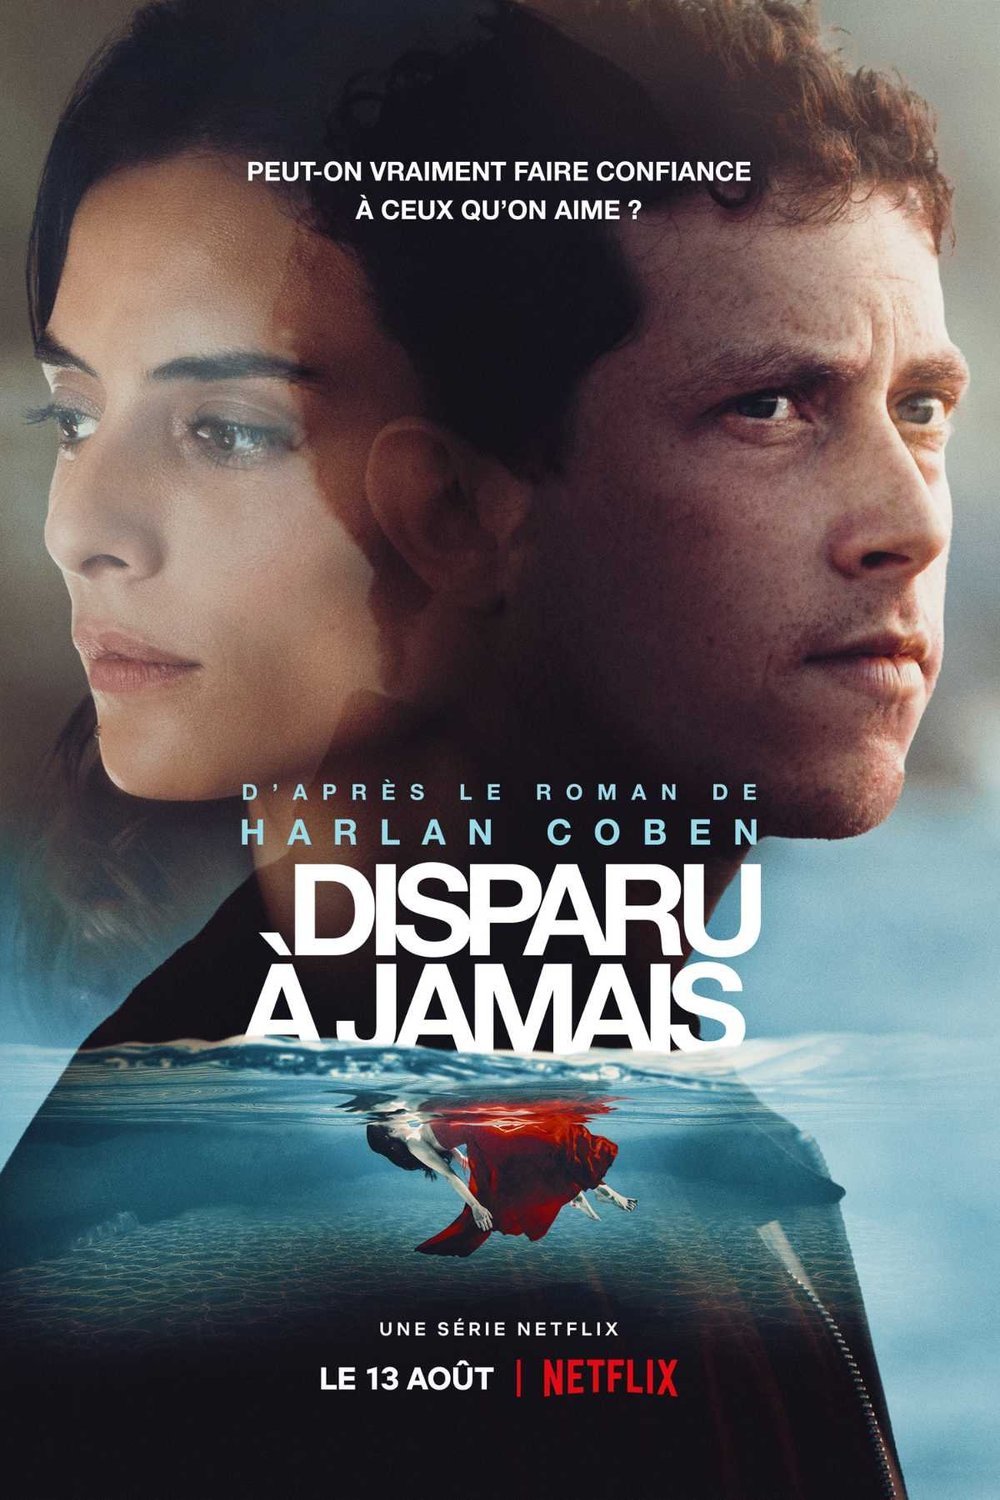 Poster of the movie Disparu à jamais